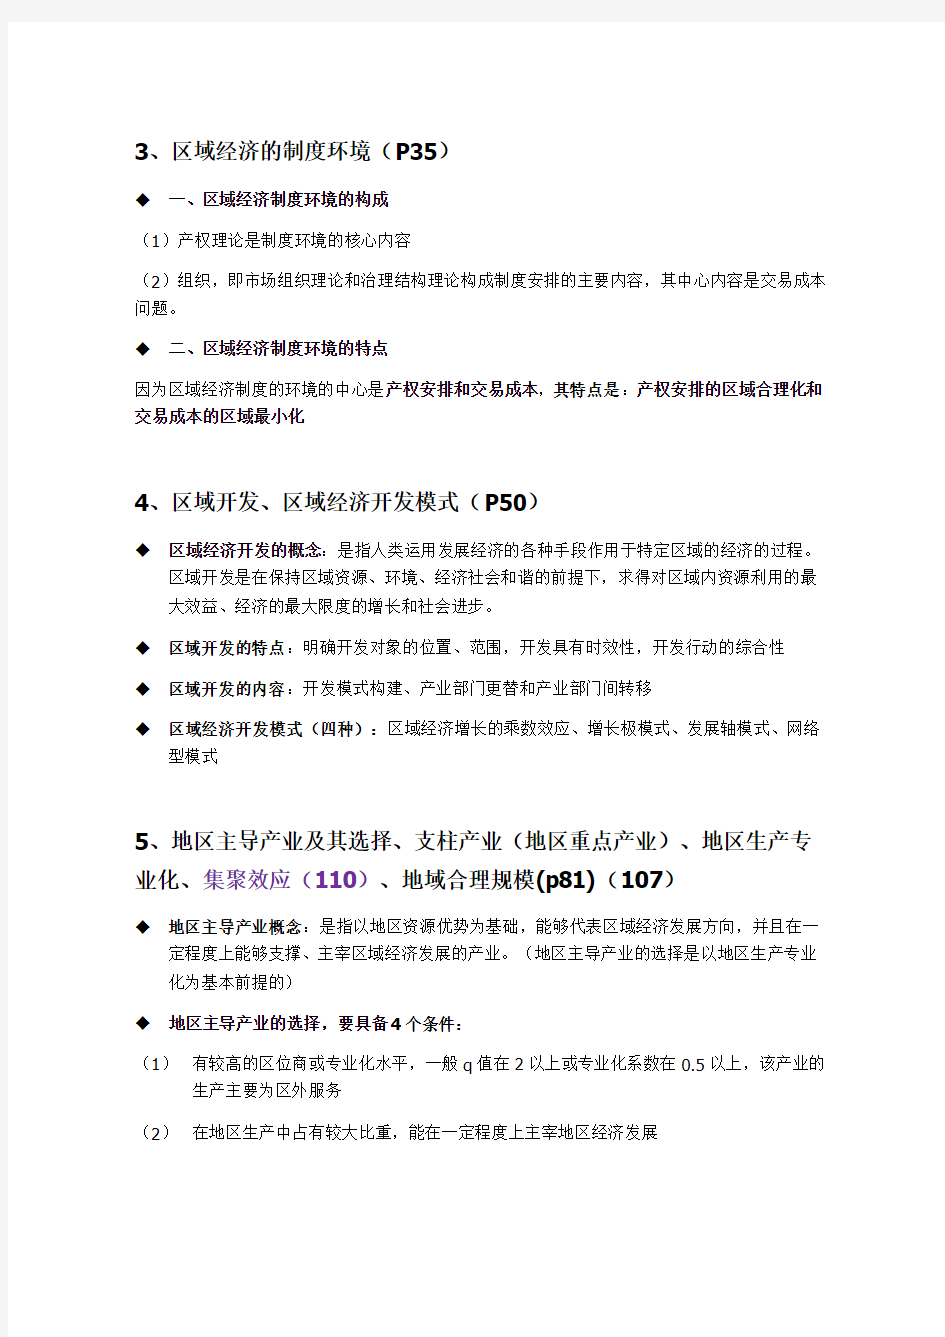 区域经济学期末复习答案打印版广东某学院考试资料